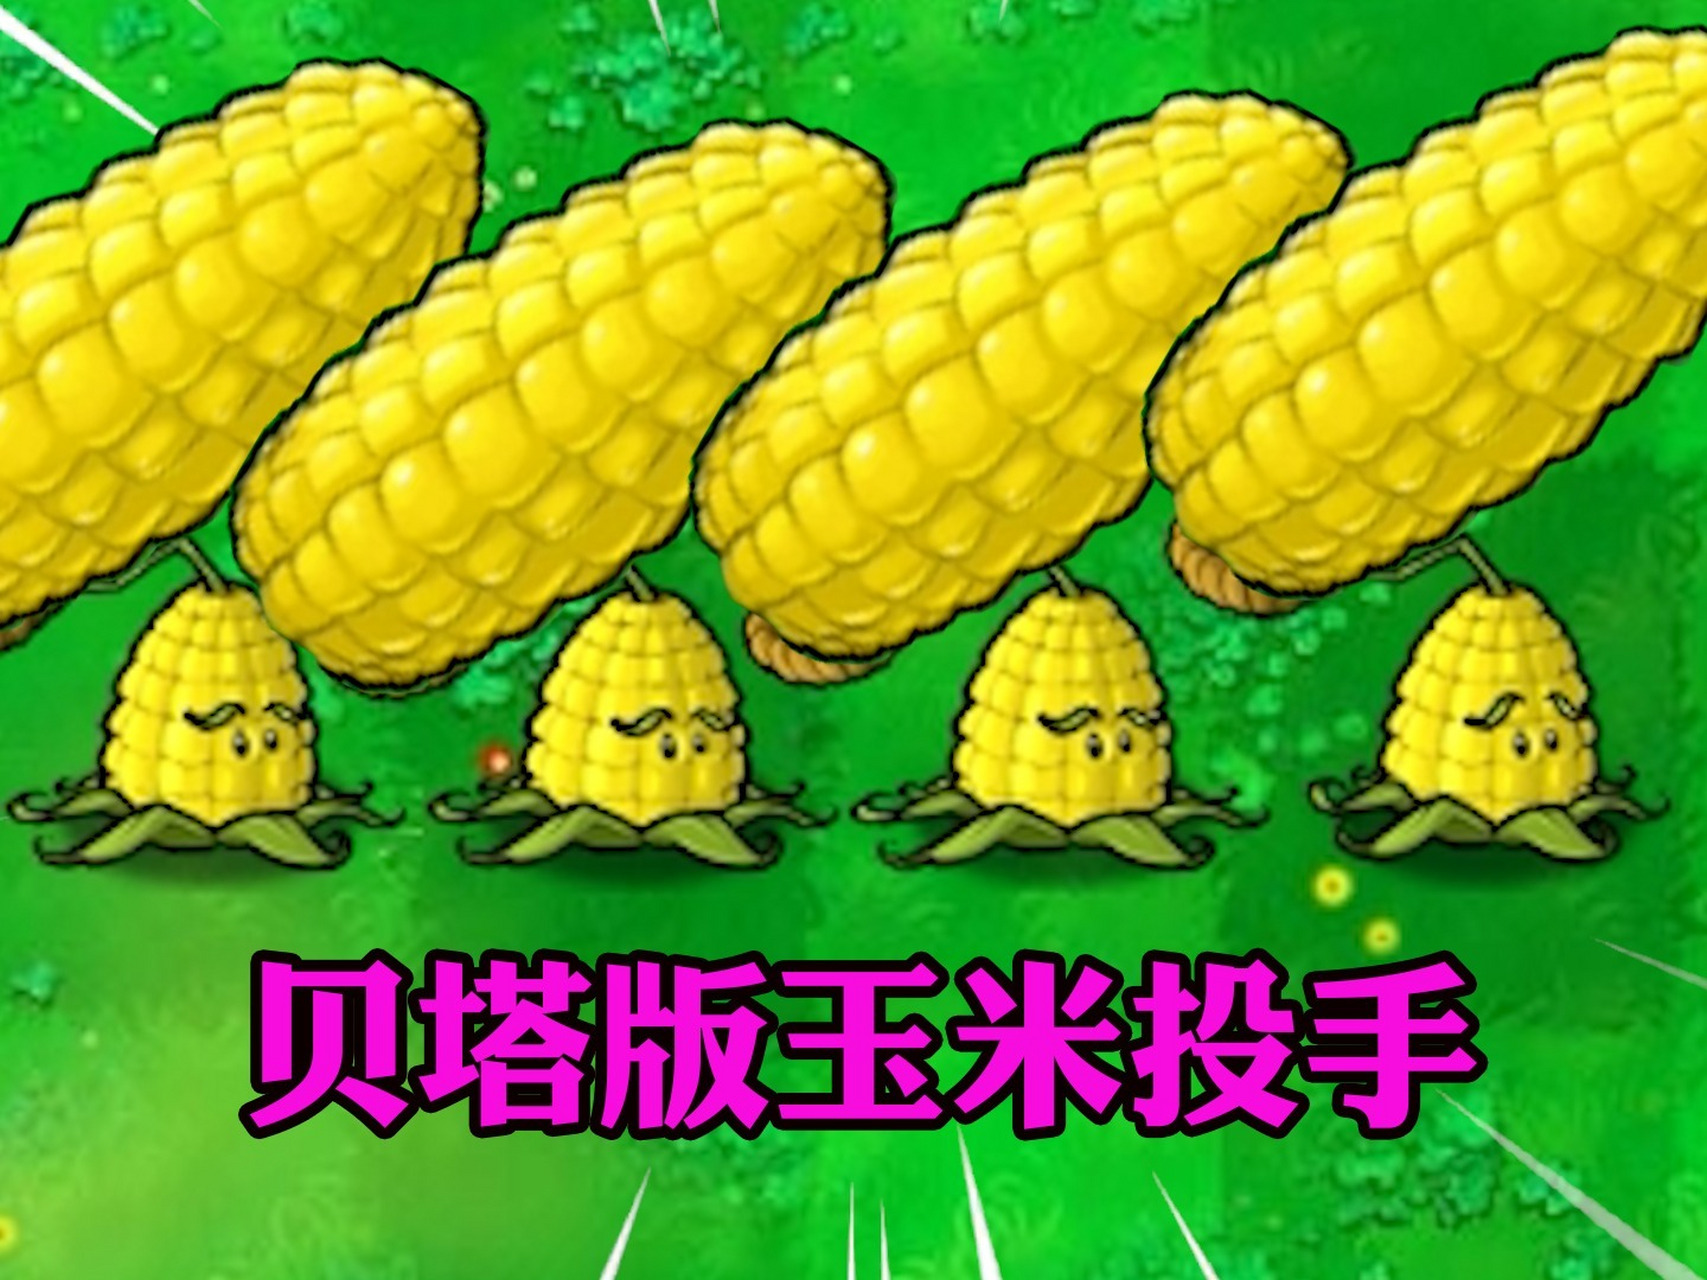 植物大战僵尸:10个贝塔版玉米投手,能赢多少敌人?020202